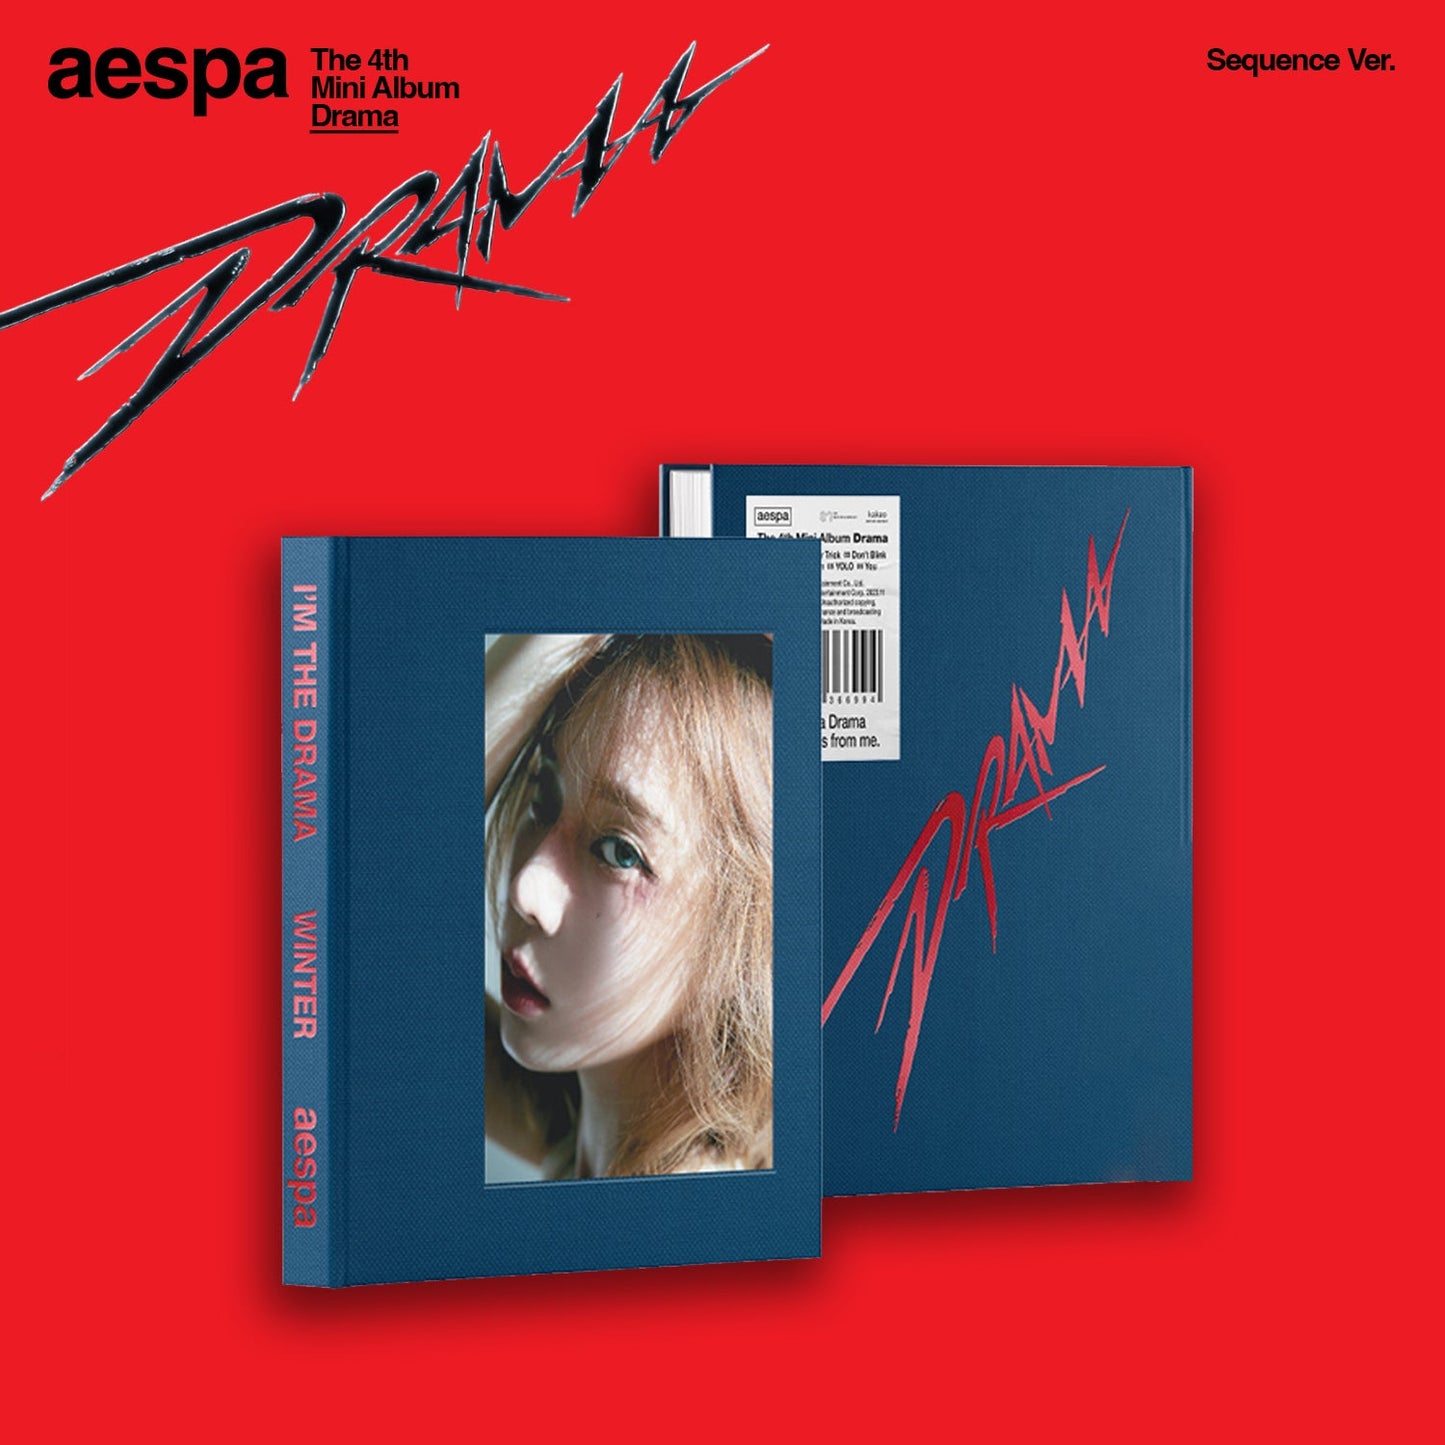 AESPA 4TH MINI ALBUM 'DRAMA' (SEQUENCE) WINTER VERSION COVER